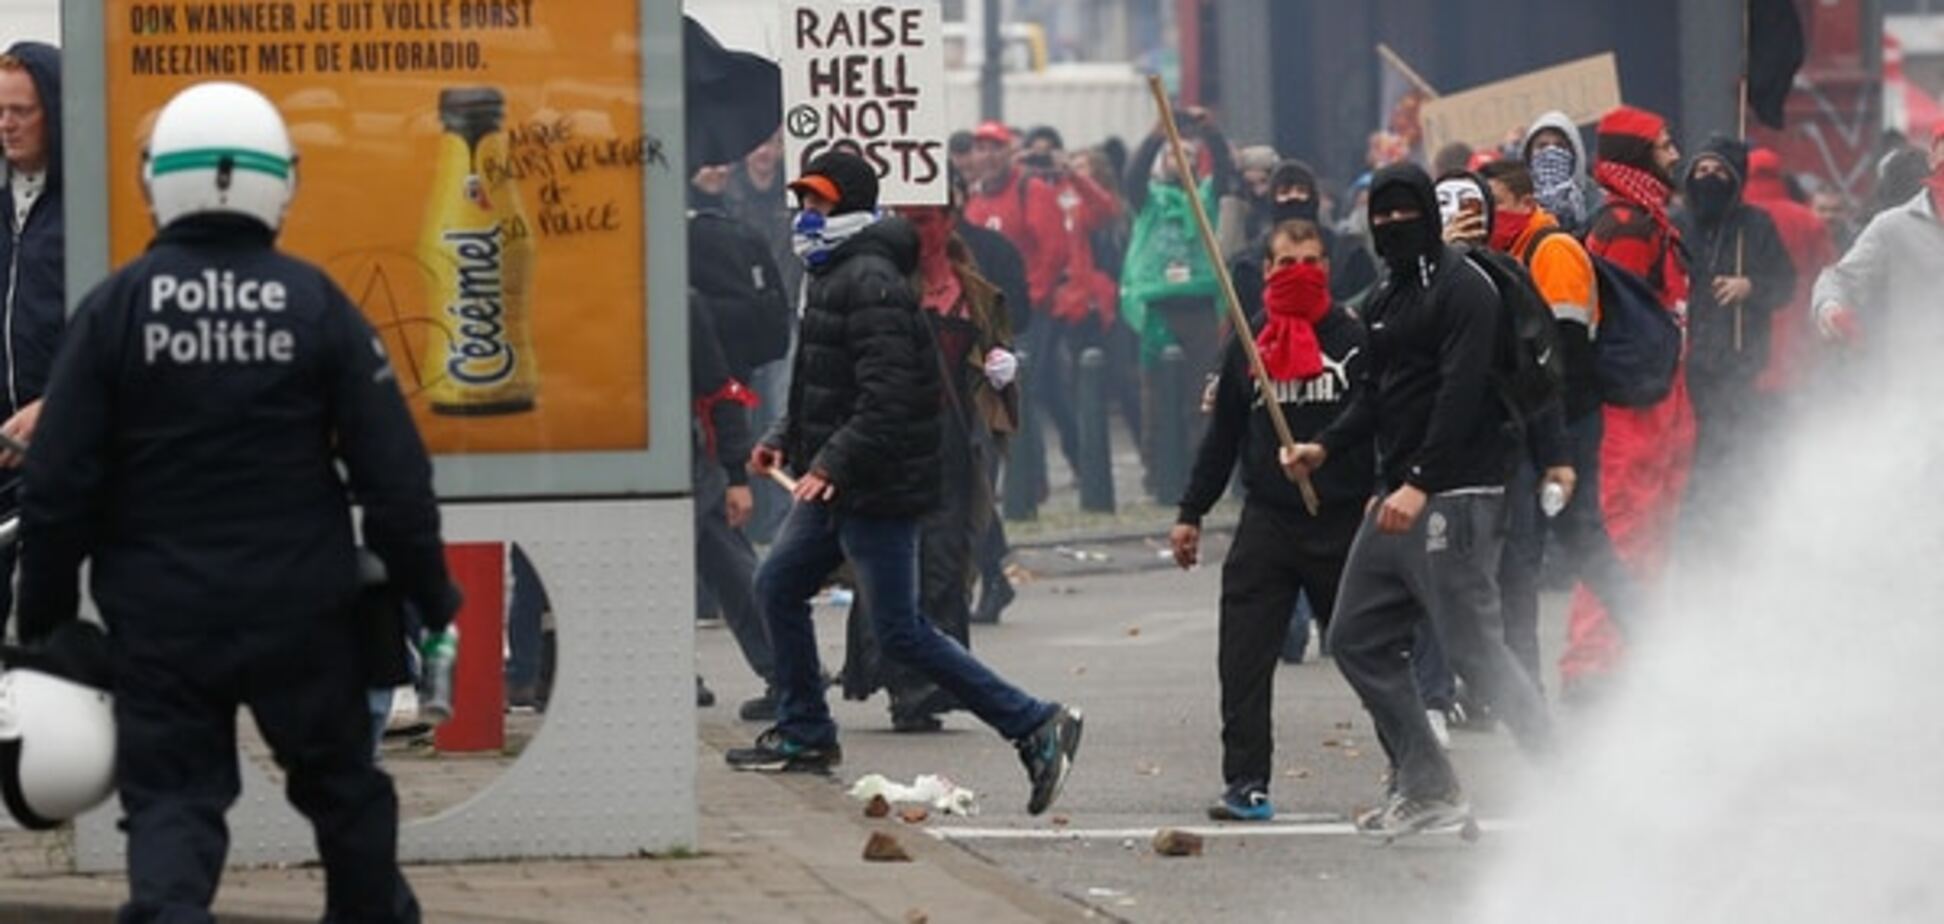 Протести в Брюсселі переросли в сутички з поліцією